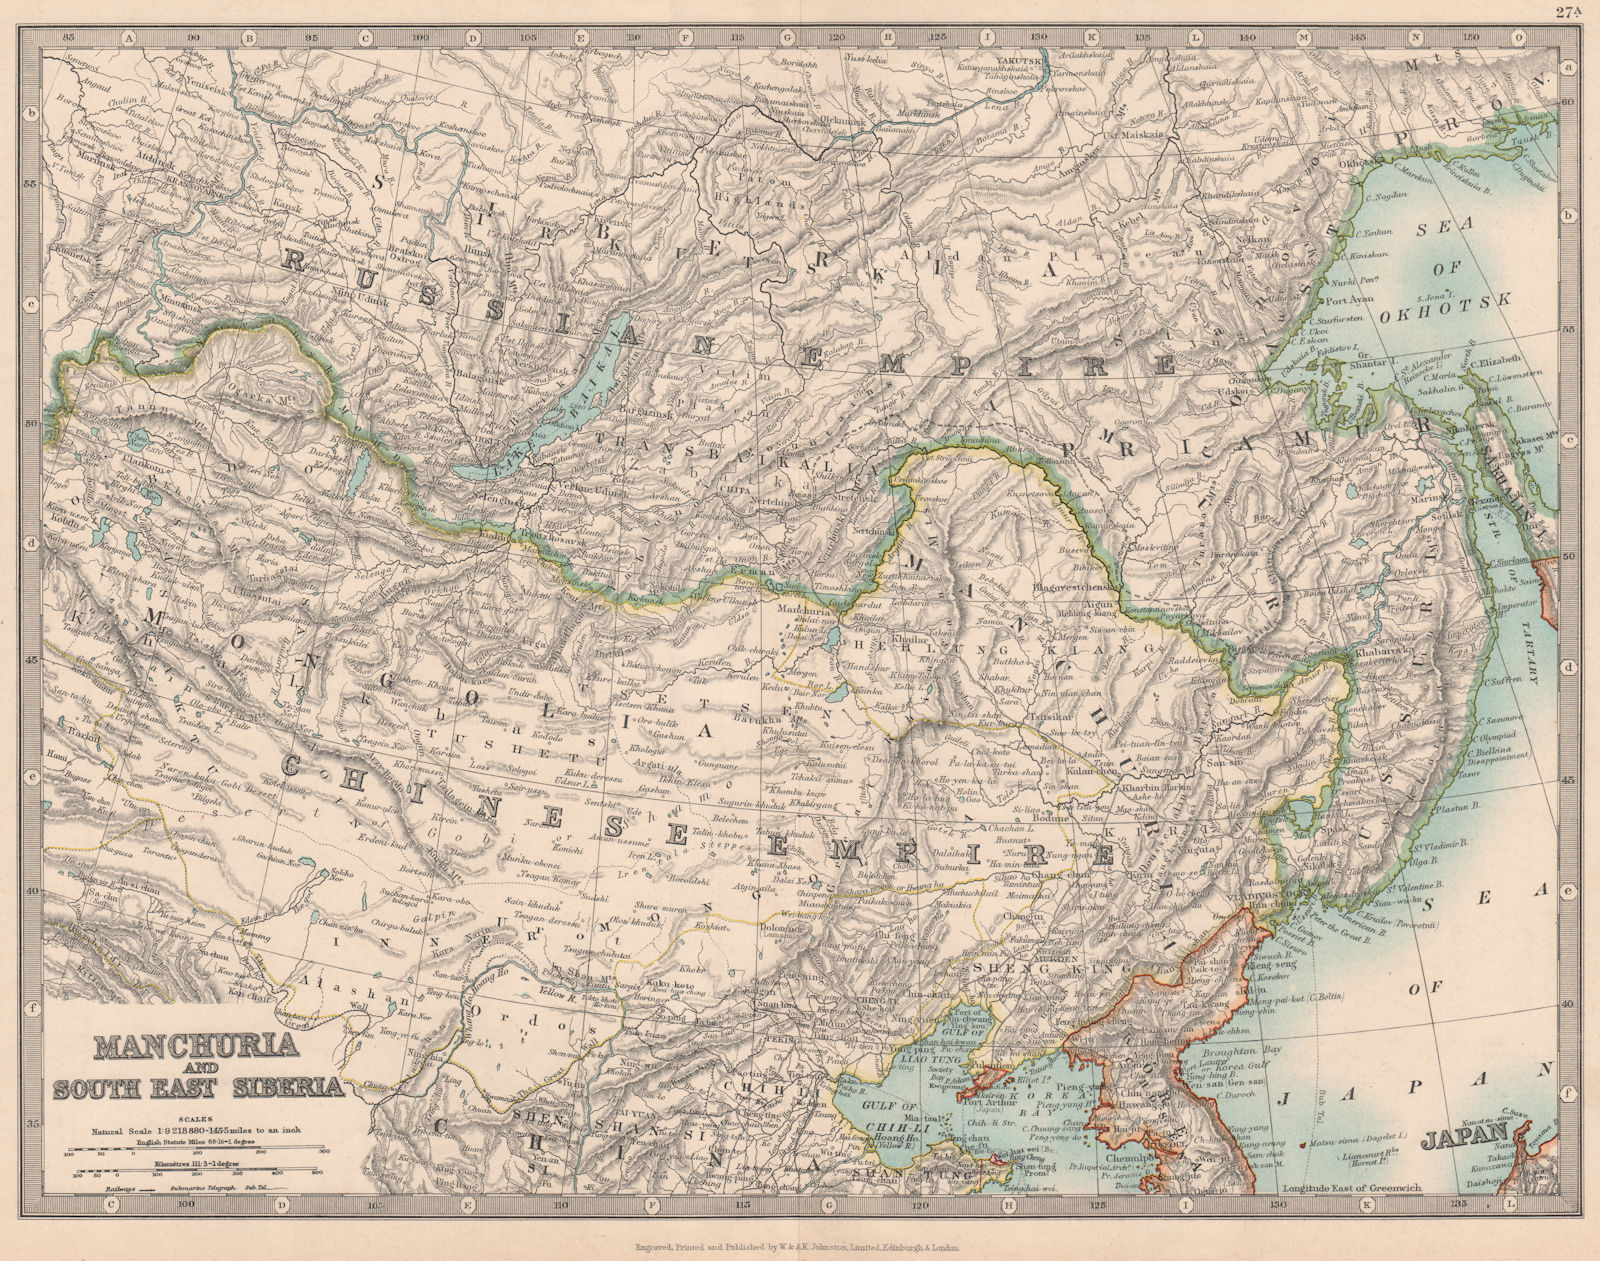 MANCHURIA & SOUTH EAST SIBERIA Mongolia China Russia East Asia JOHNSTON 1912 map